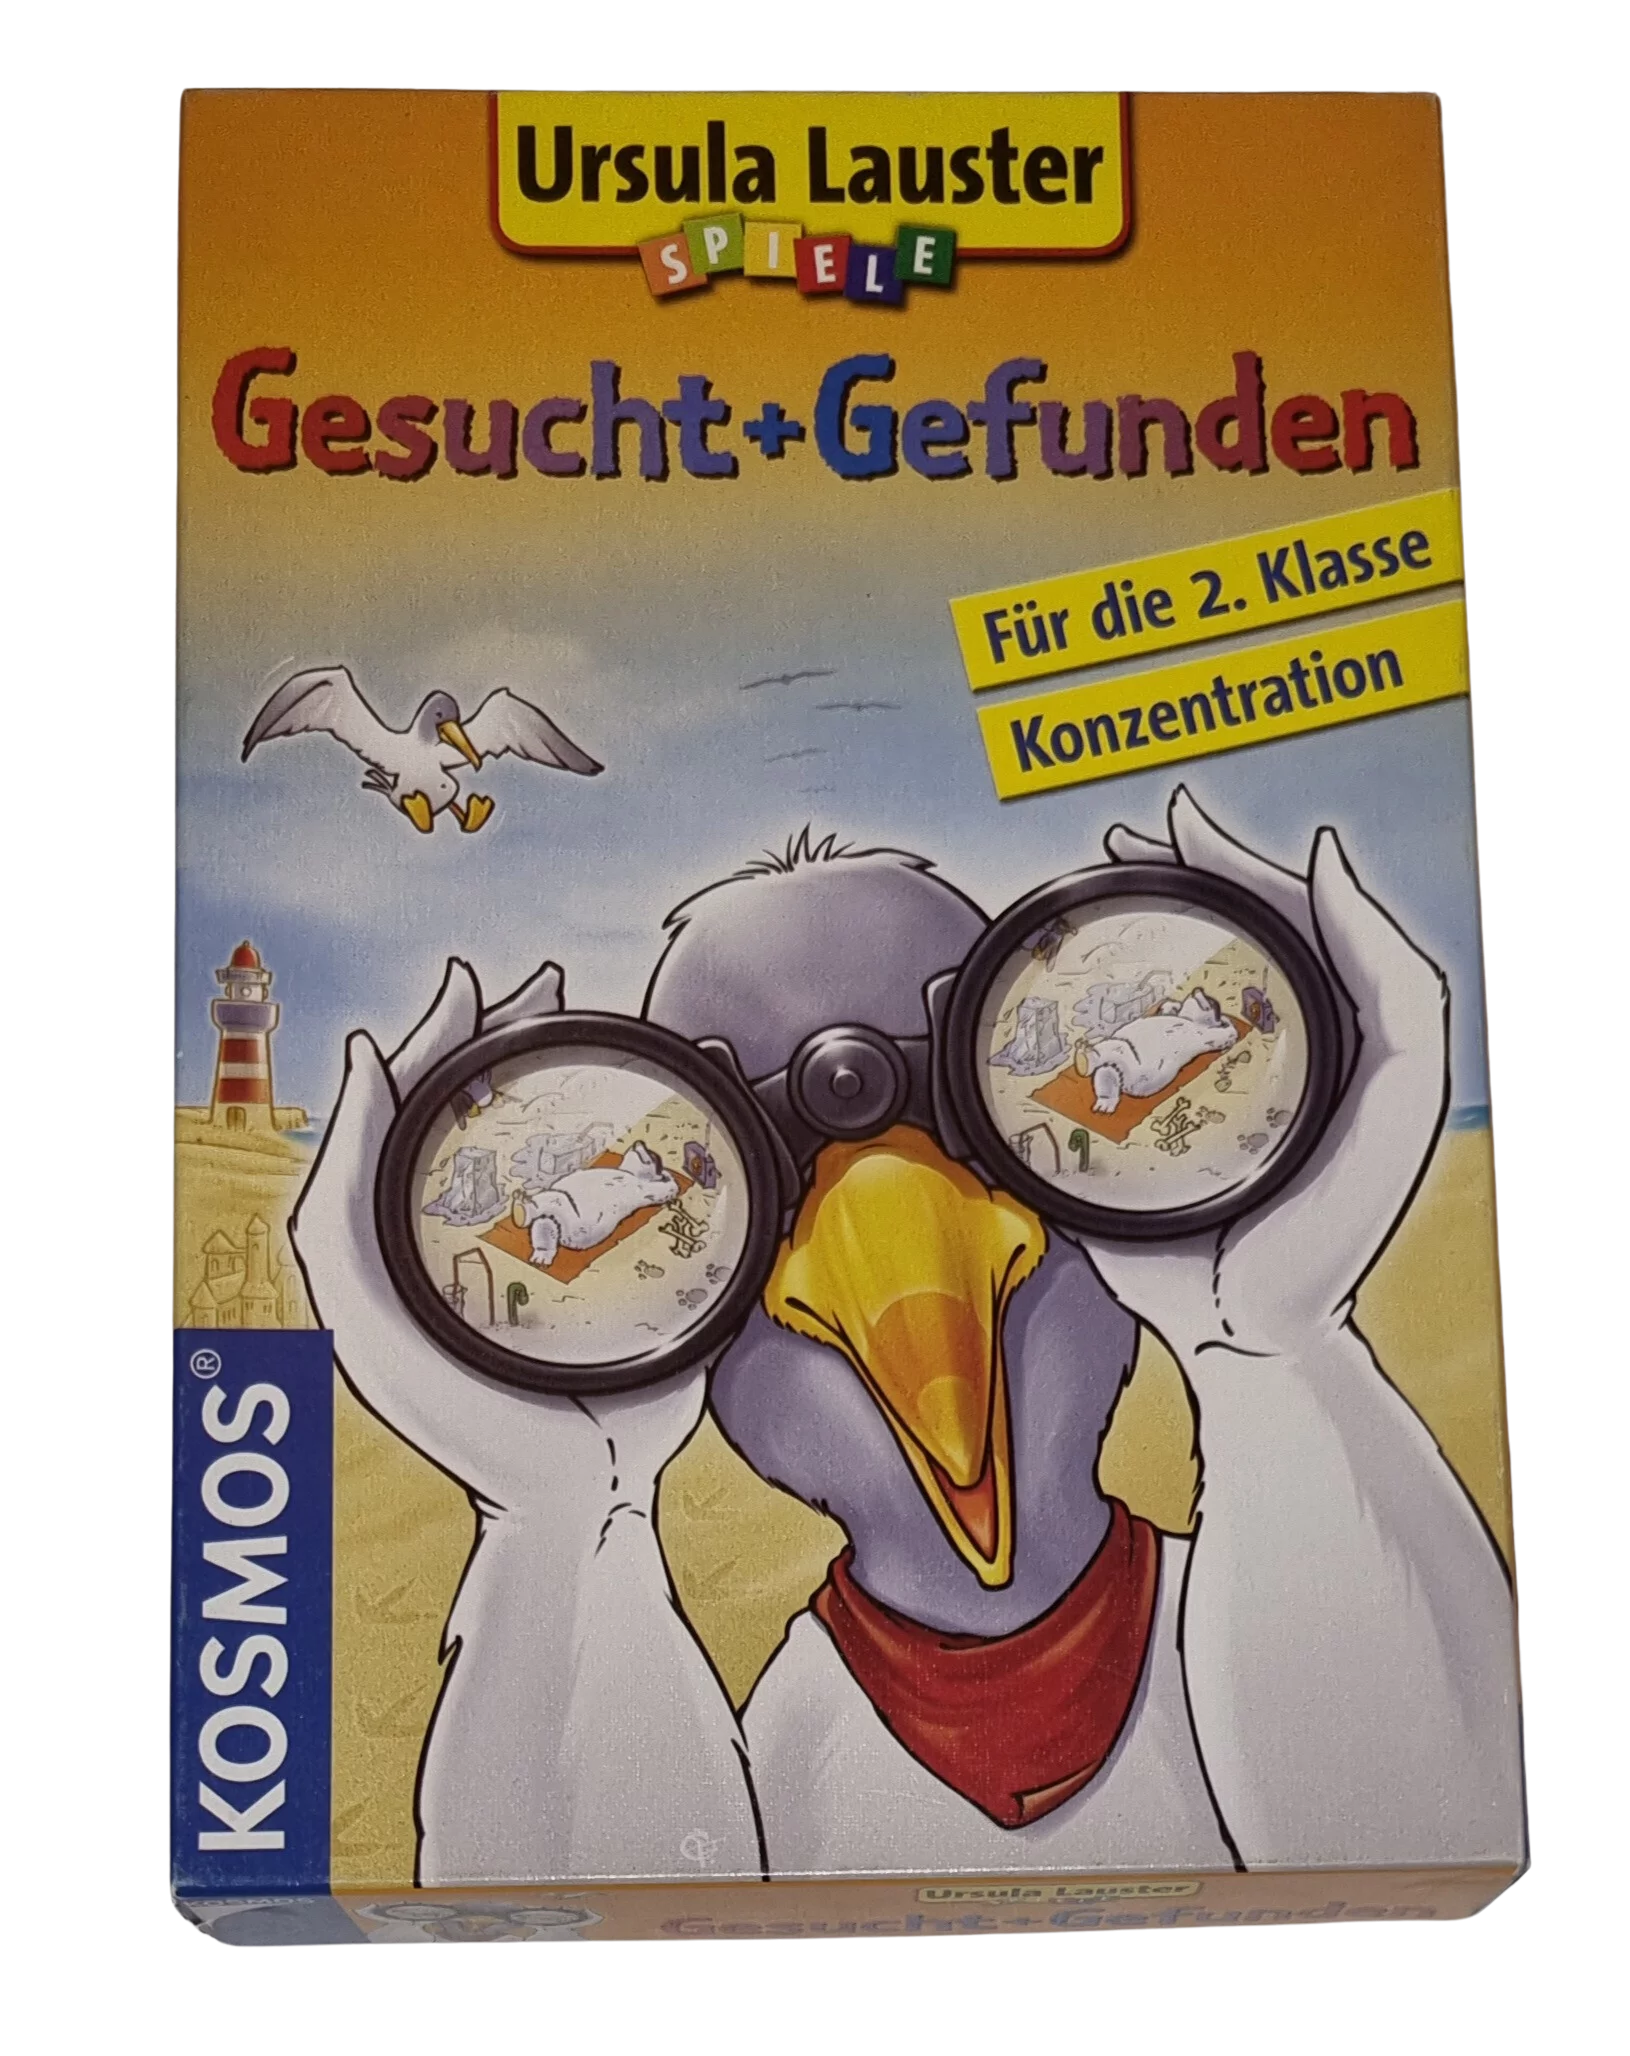 Kosmos Ursula Lauster Spiele Gesucht + Gefunden 696283